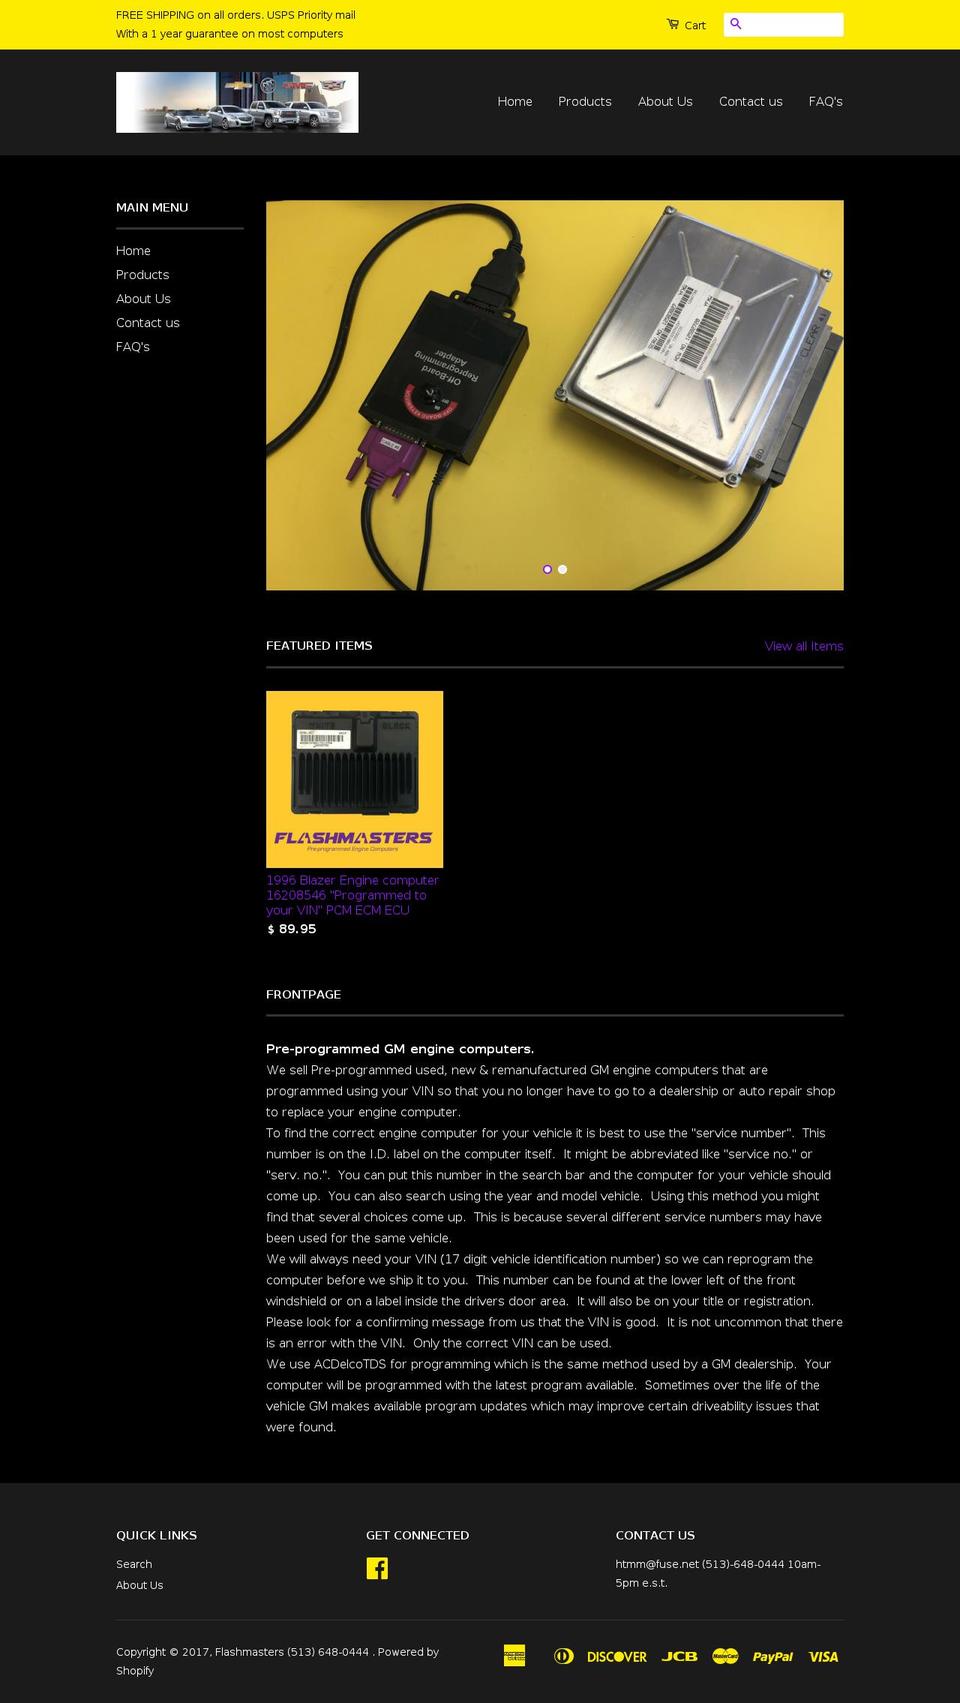 flashmastersecm.com shopify website screenshot